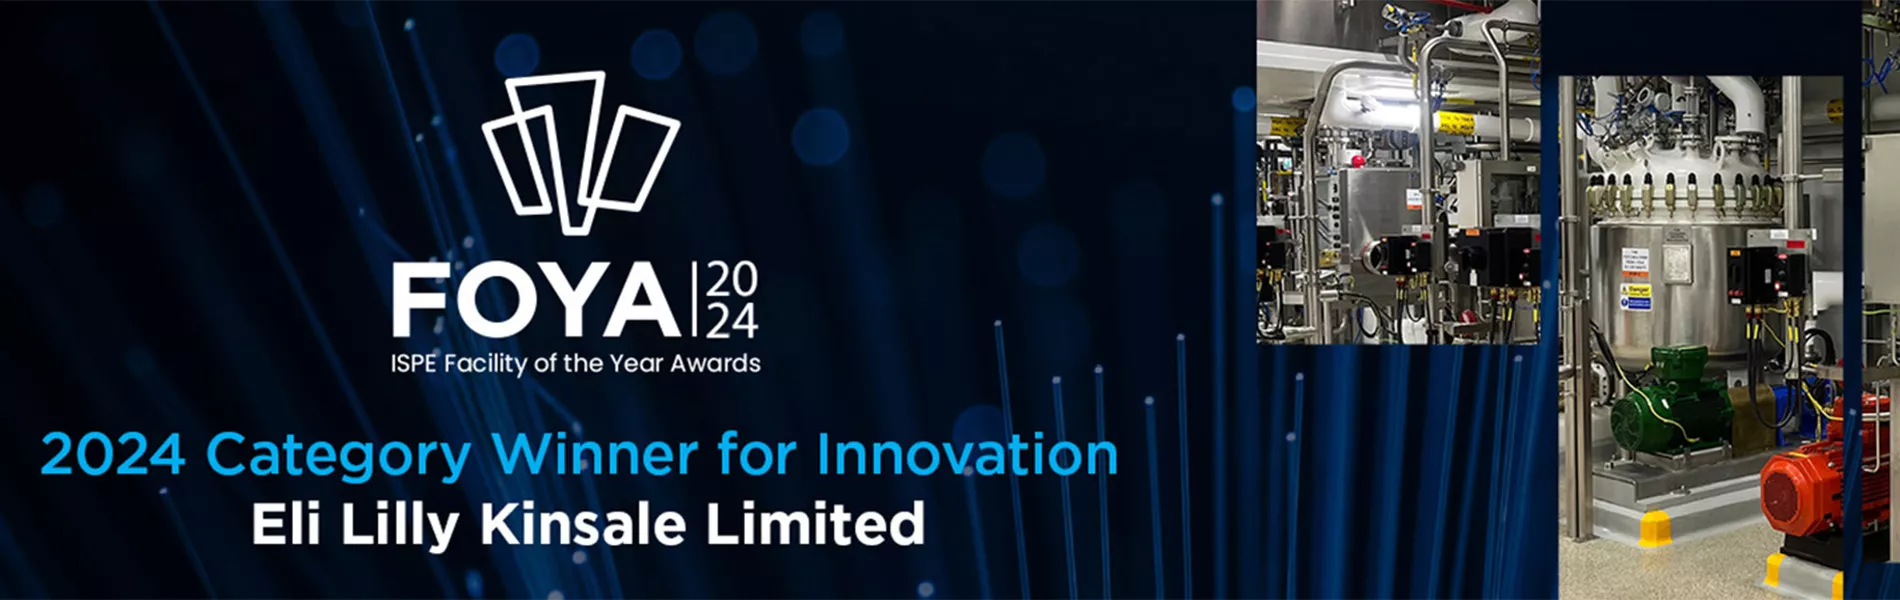 2024 Category Winner for Innovation